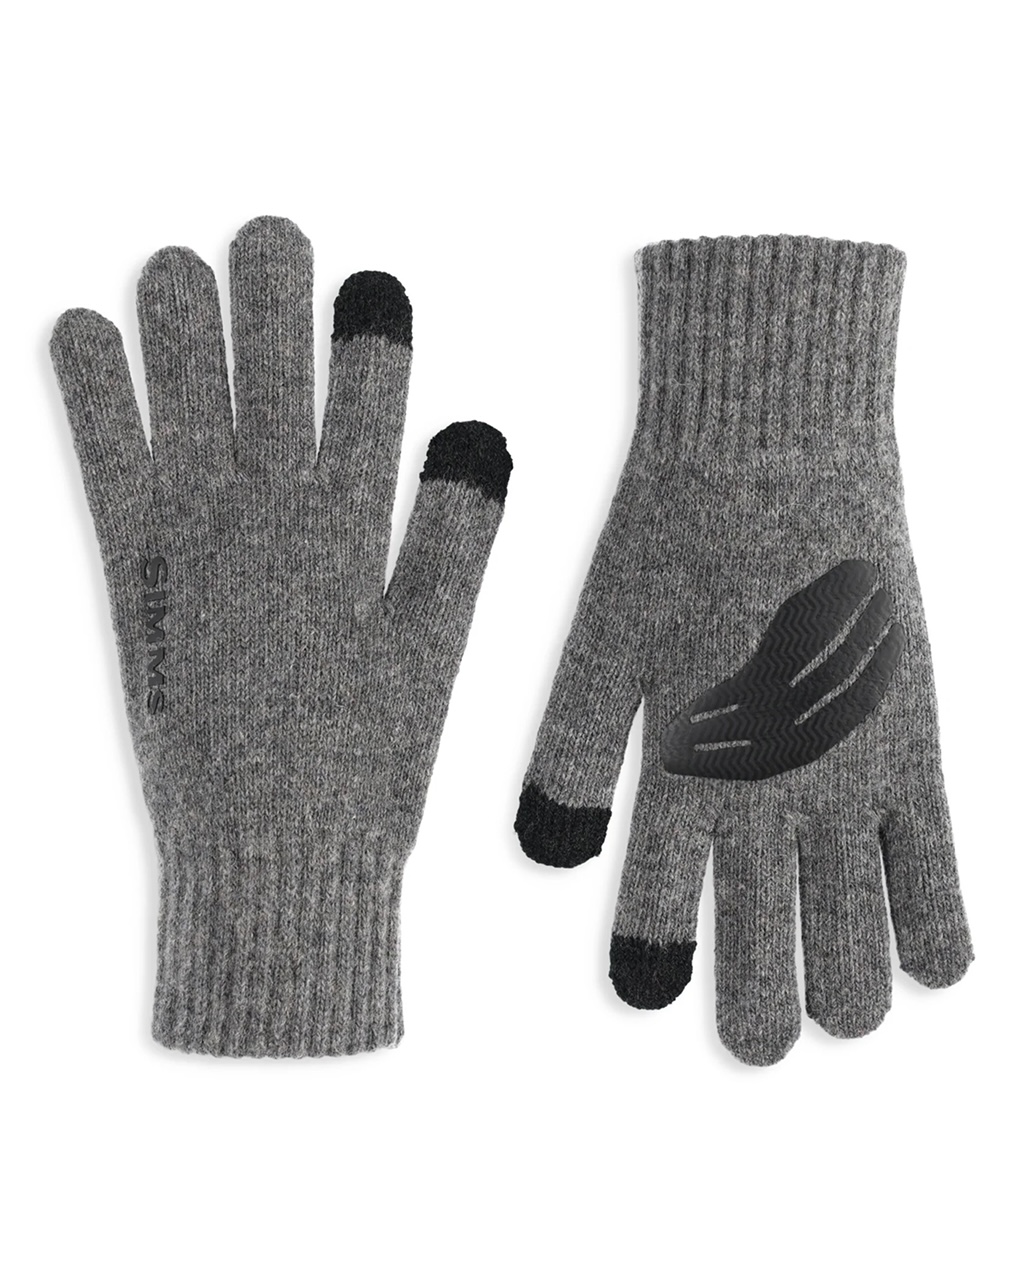 Simms Wool Full Finger Glove - S/M